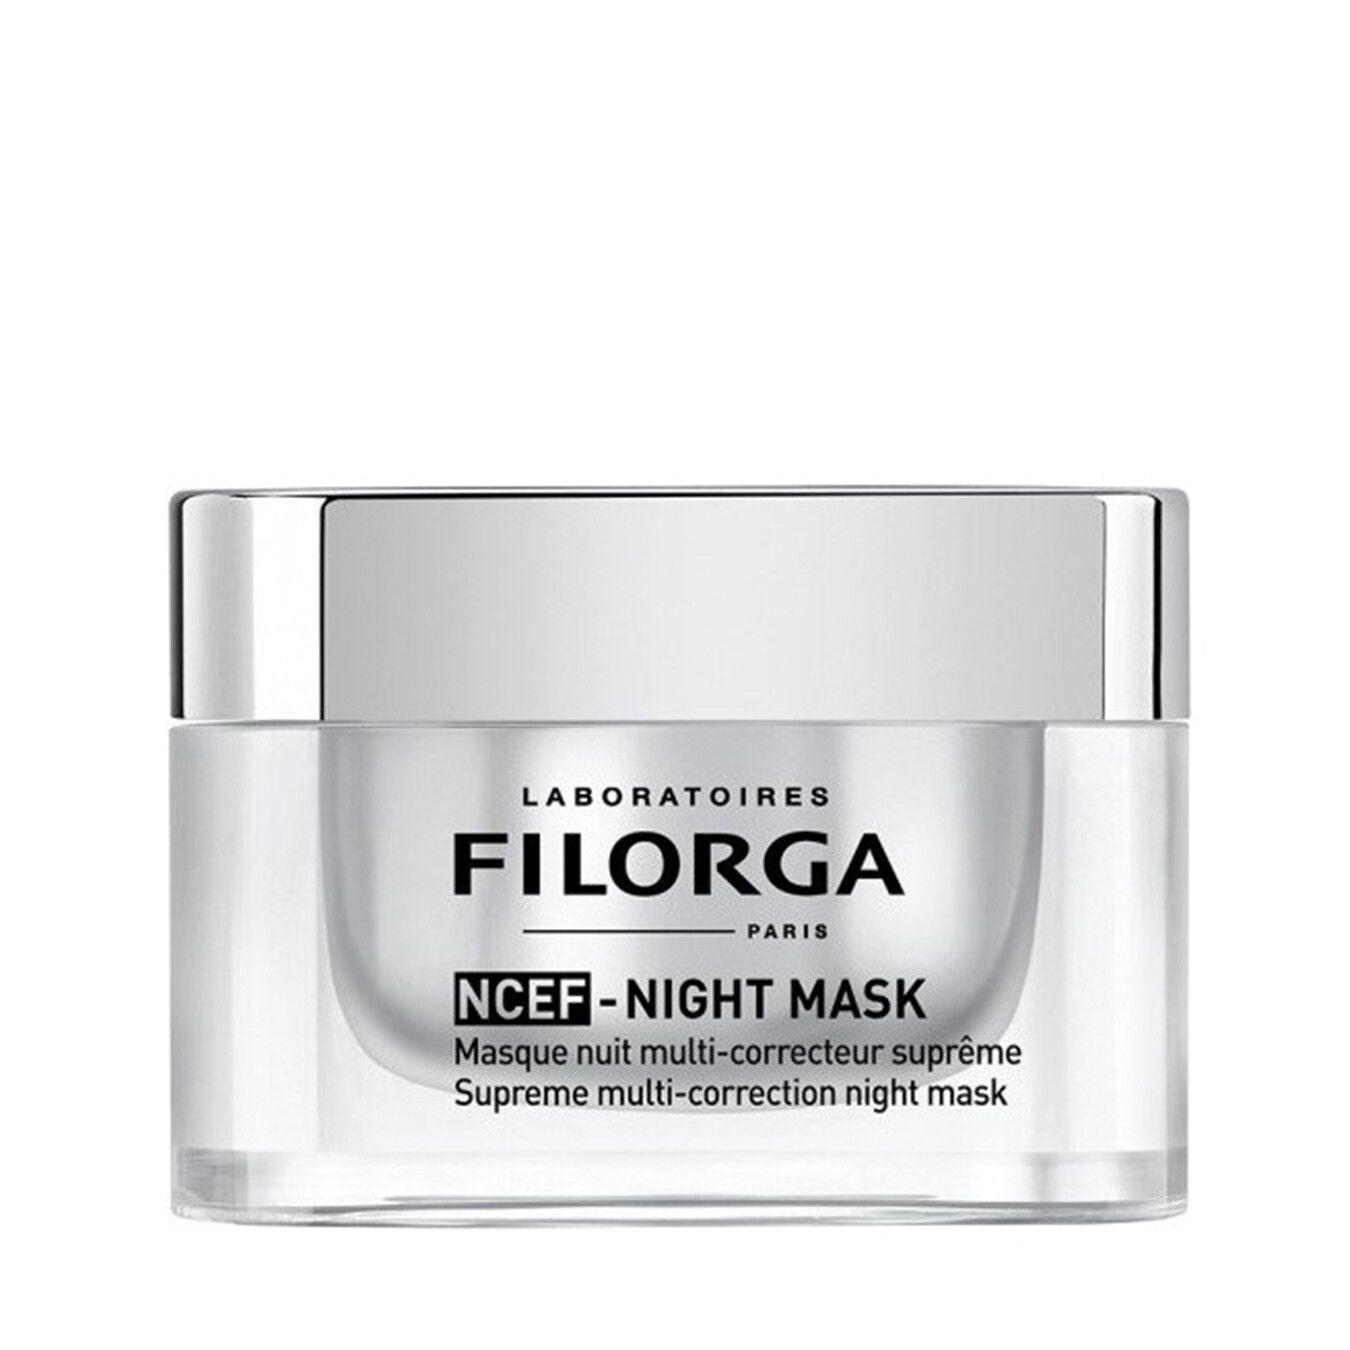 FILORGA NCEF-Night Mask Masque nuit multi-correcteur suprême